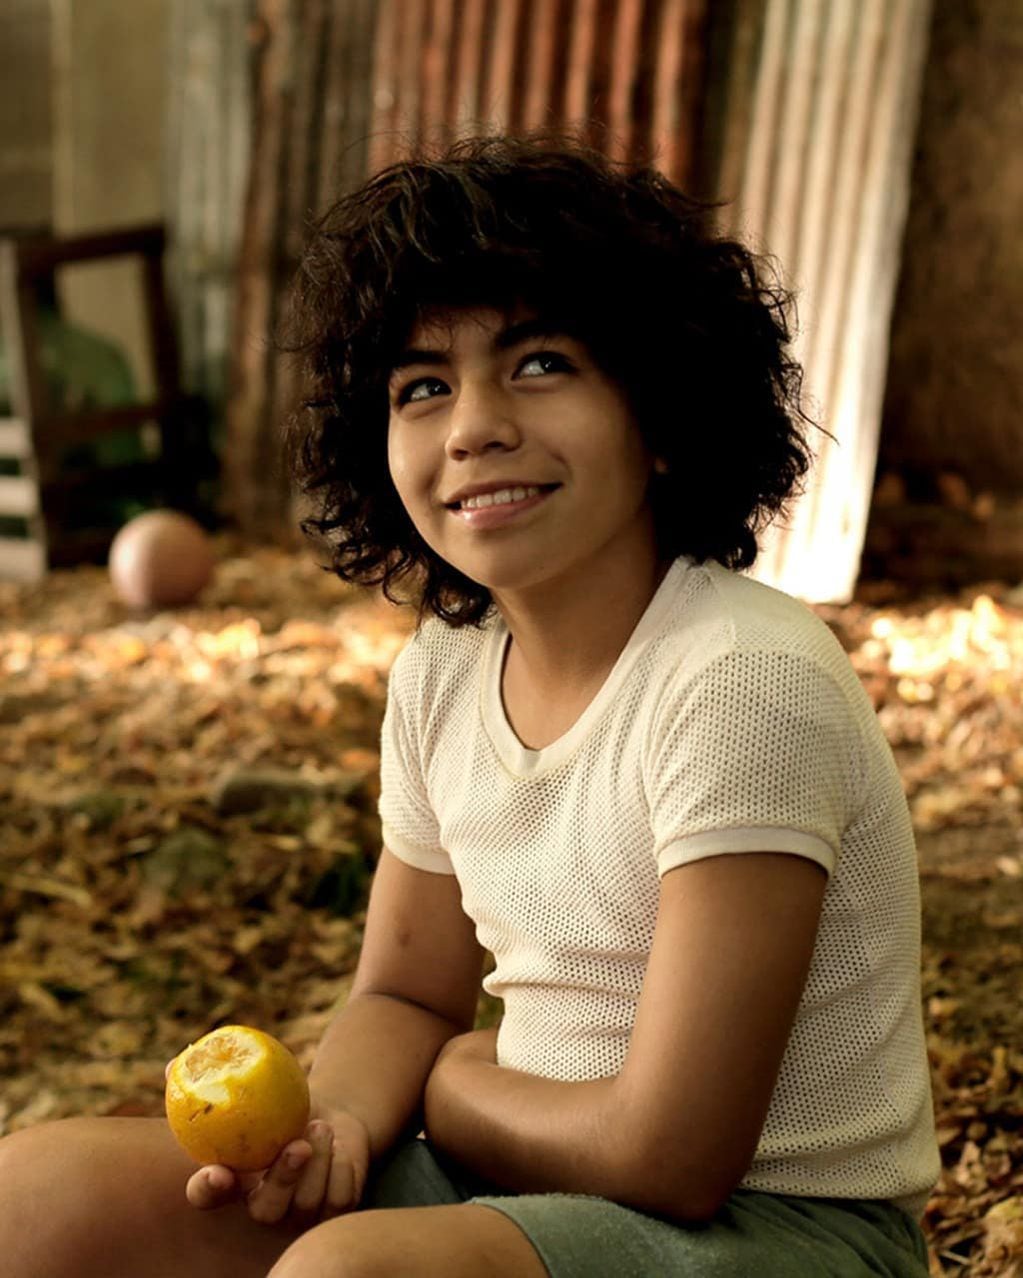 Juan Cruz Romero interpreta a Pelusa siendo un niño en "Maradona: Sueño Bendito", la serie de Amazon Prime que será estrenada el 29 de octubre. Foto: Instagram @maradonaprimevideo